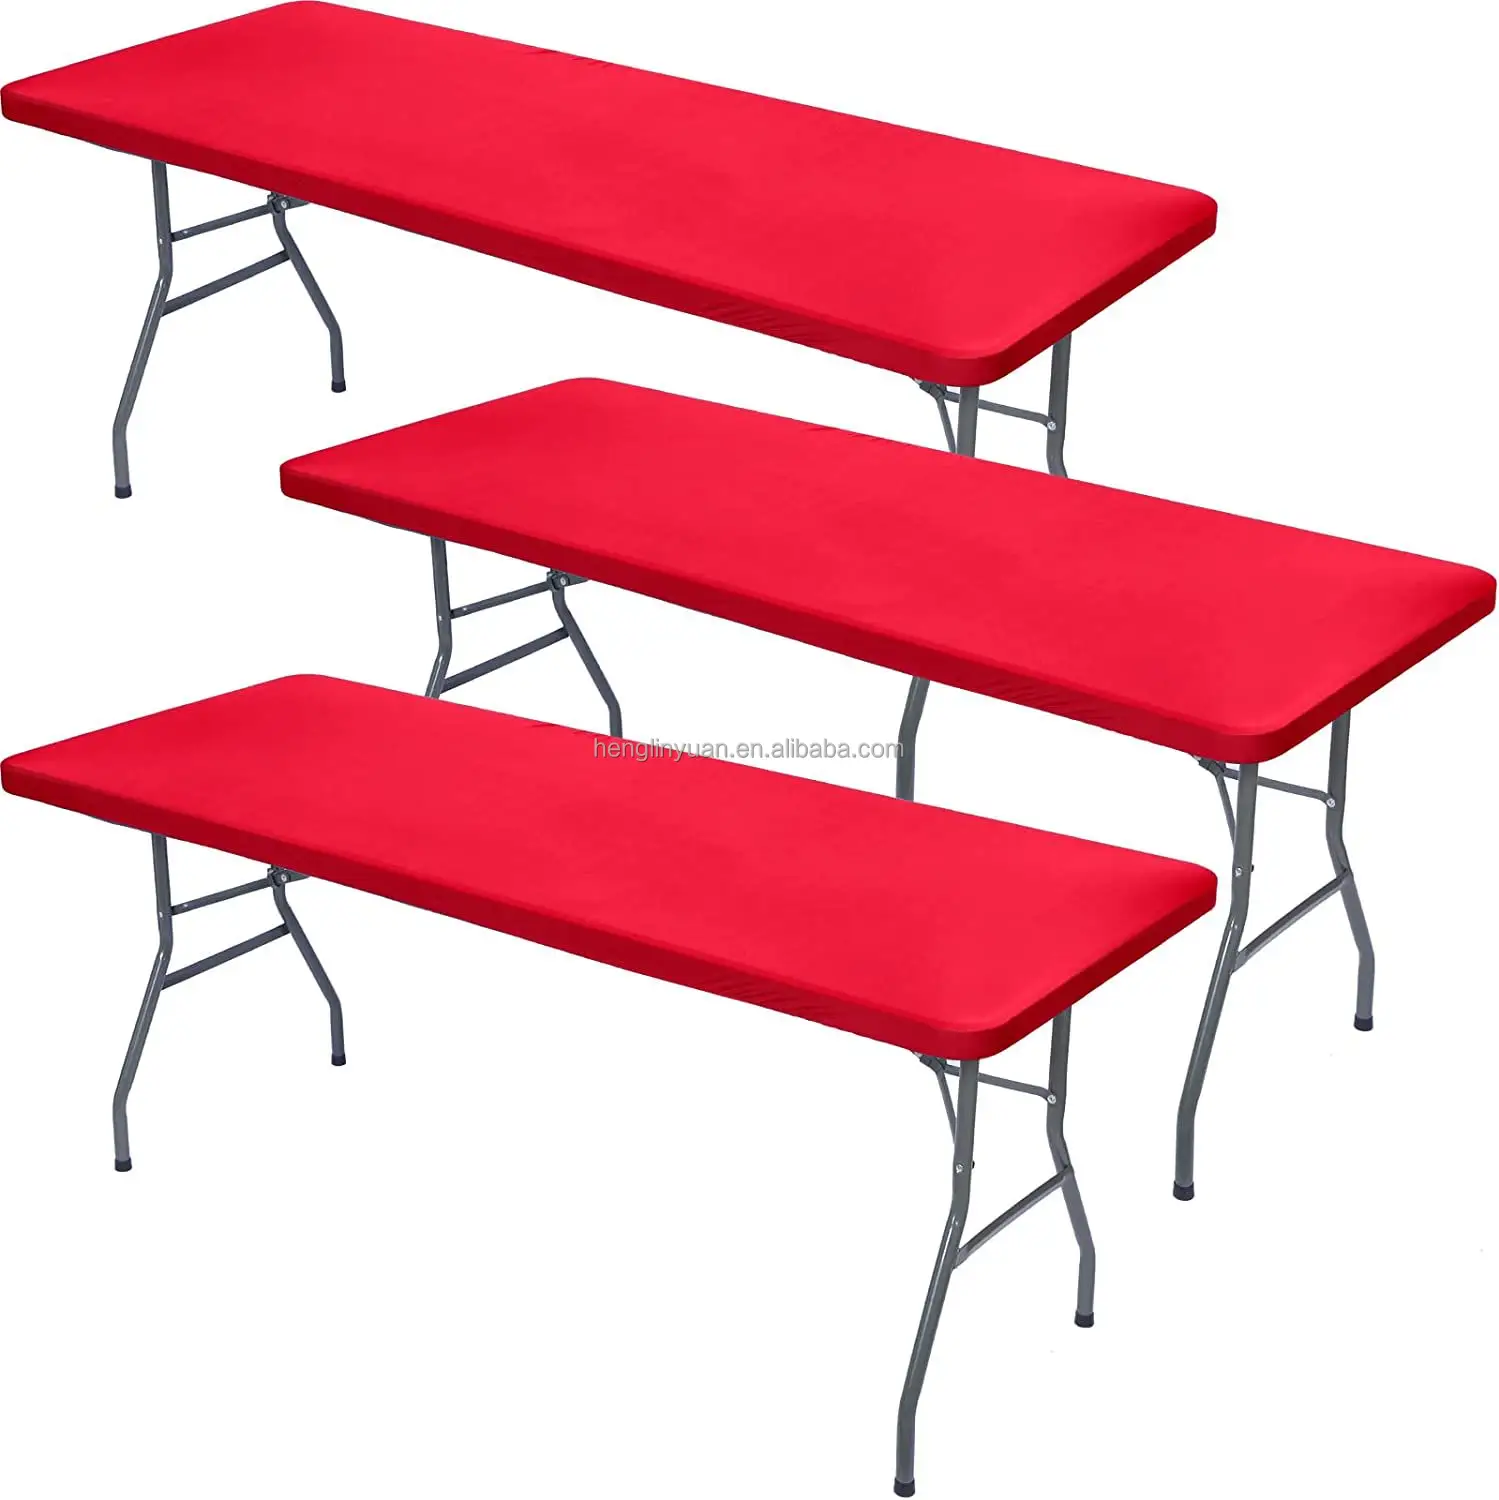 तह टेबल प्लास्टिक वाटरप्रूफ टेबलटाट पिकनिक विनाइल फ्लैनेल समर्थित इलास्टिक कॉर्नर टेबल कवर आयताकार टेबल कवर